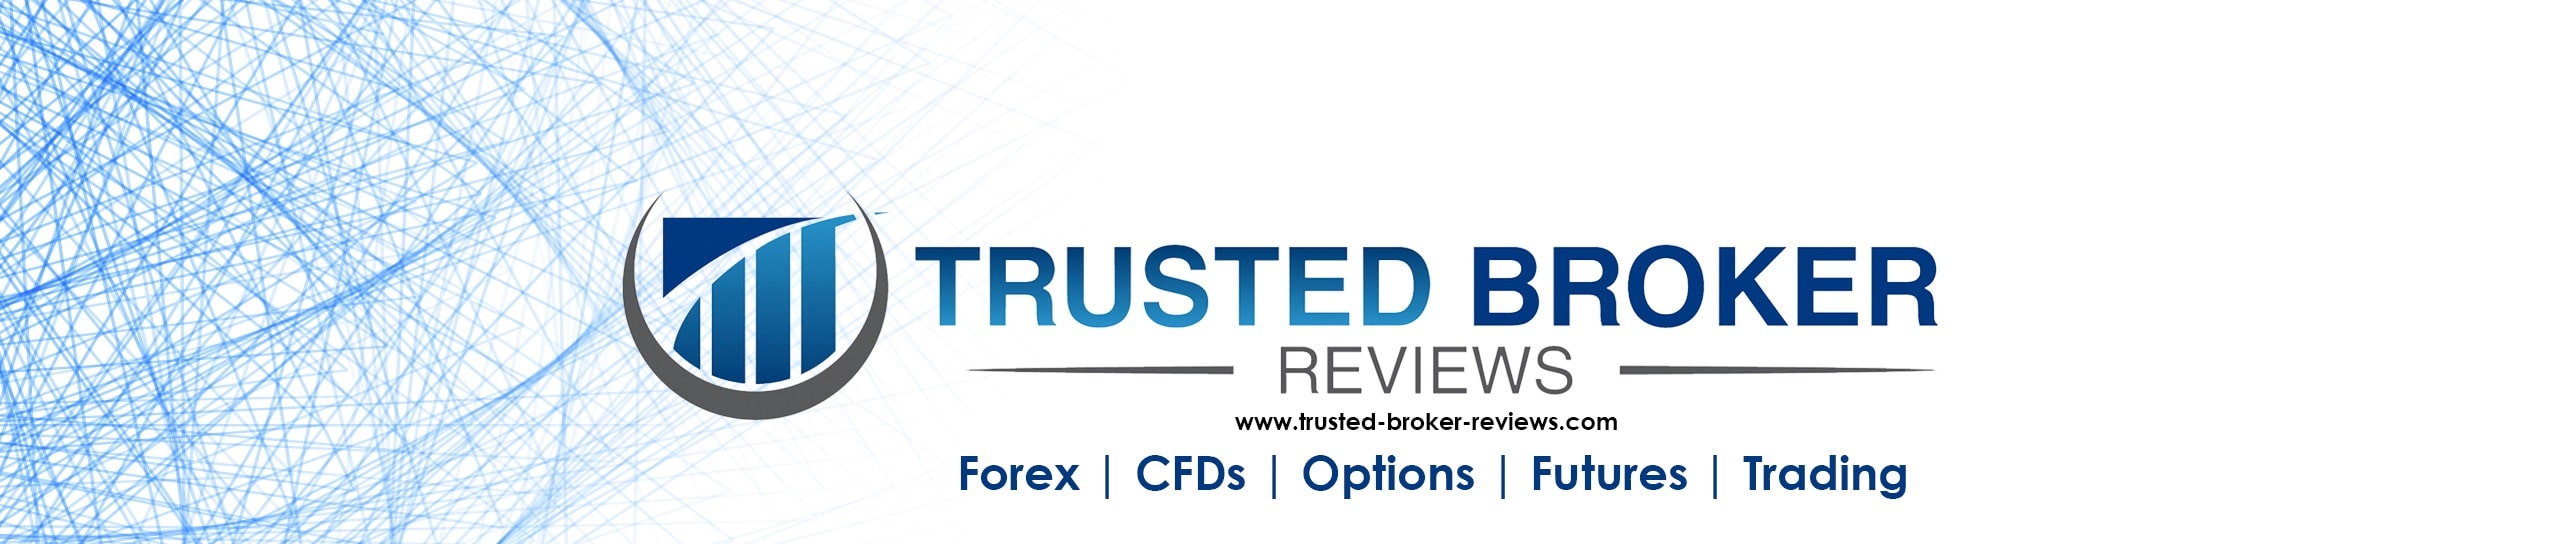 Trusted Broker Reviews हमारे बारे में लोगो